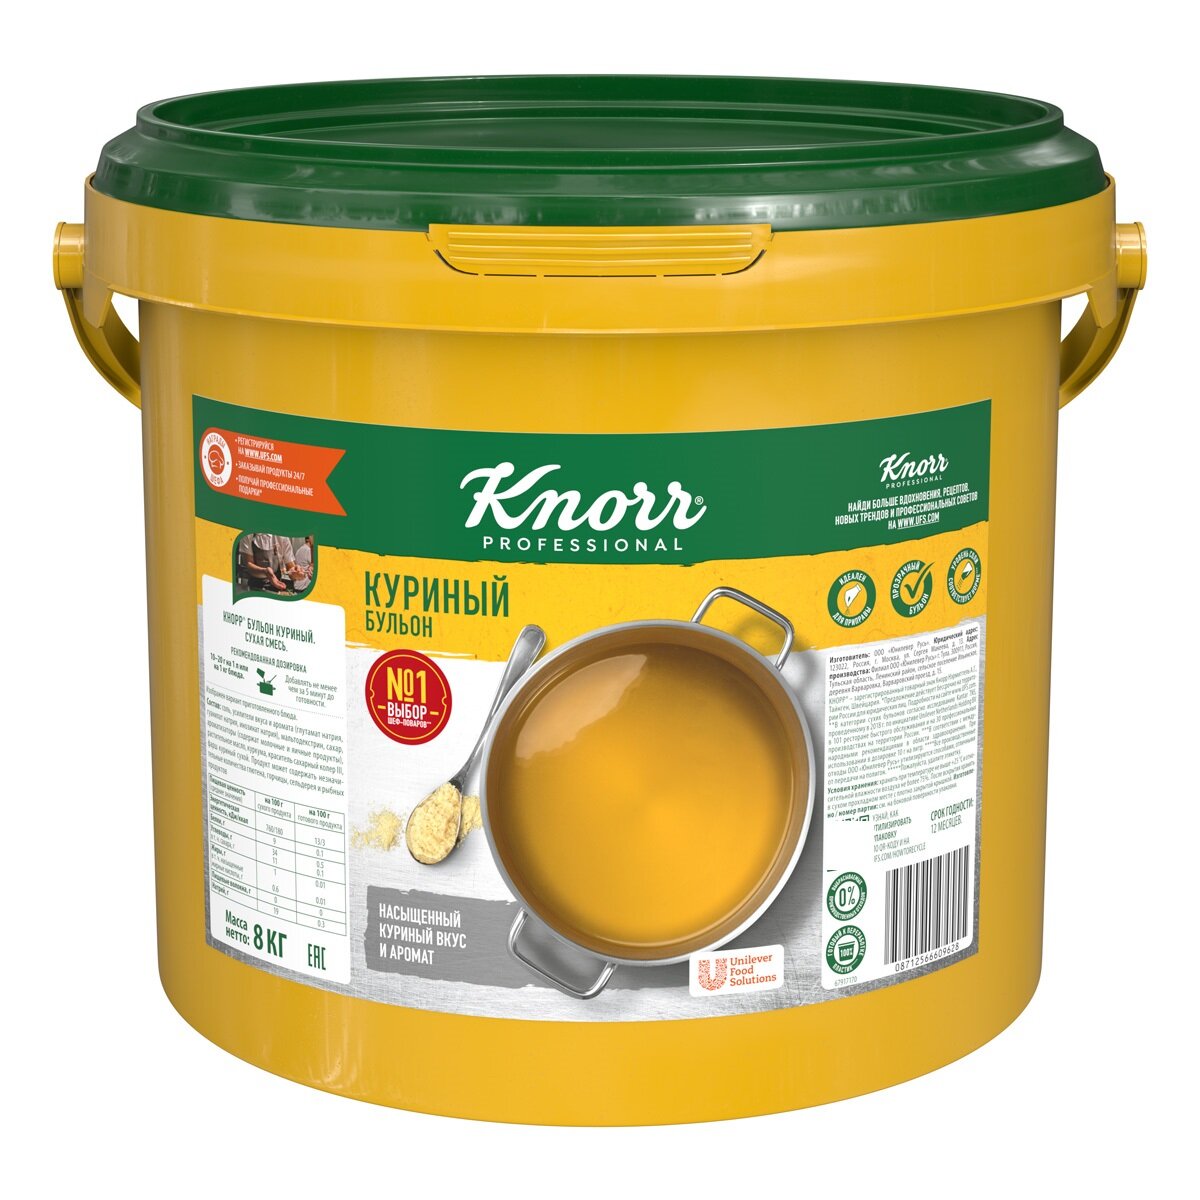 Бульон куриный 8 кг Knorr, 1 шт